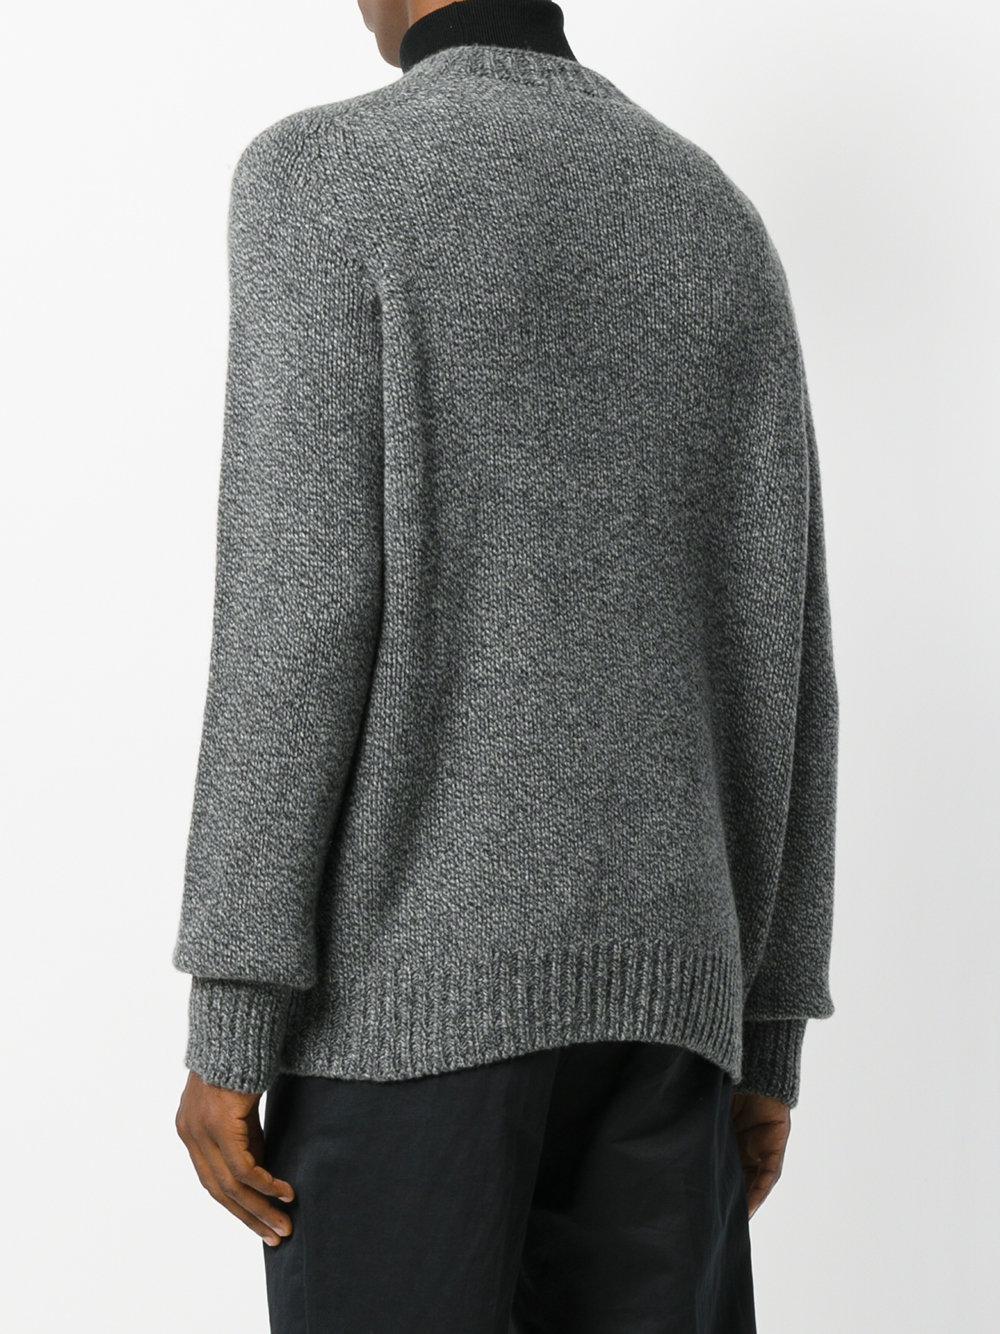 Lyst - Sunspel Heavy Knit Sweater in Gray for Men